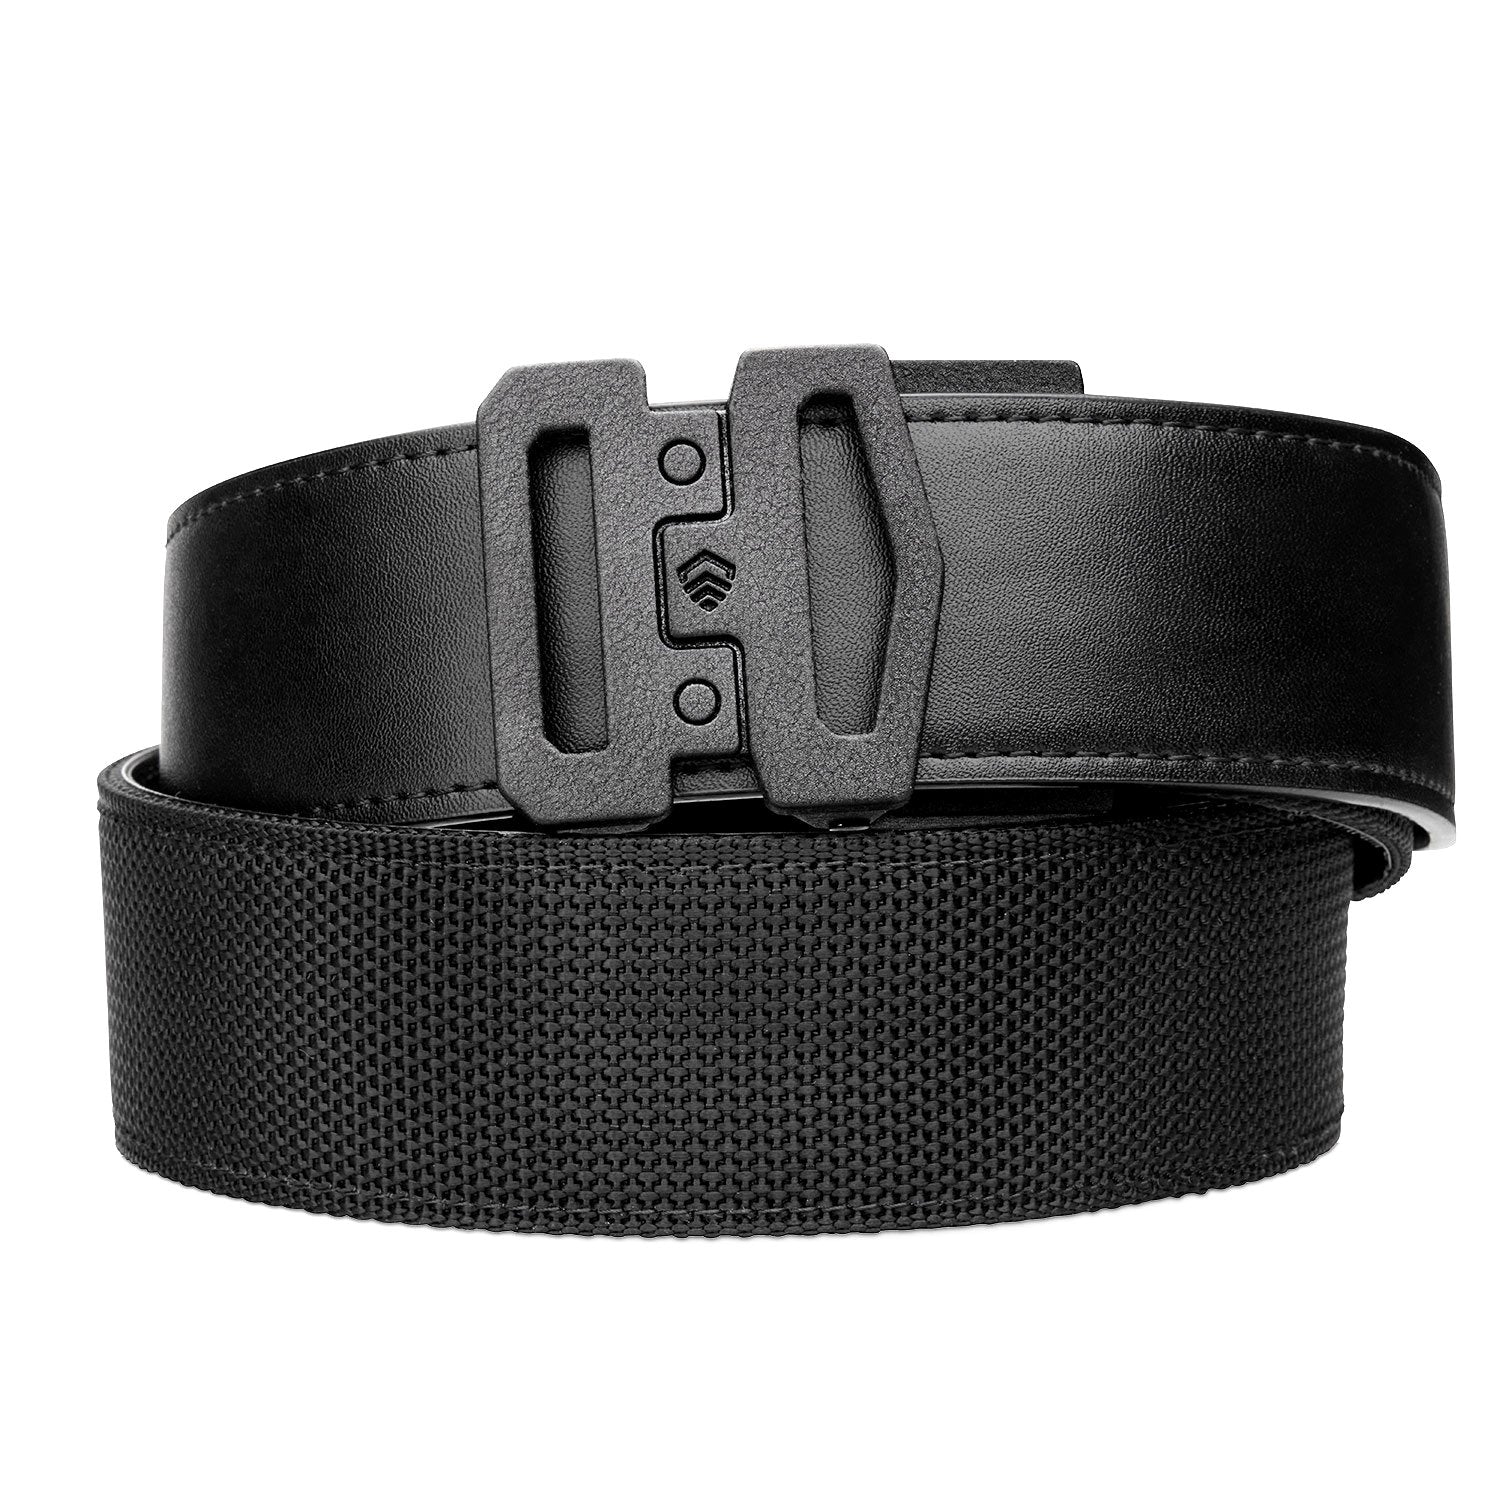  KORE Tactical Gun Belt  X2 Buckle & Black Reinforced Tactical  Belt (Fits 24 to 54) : Sports & Outdoors